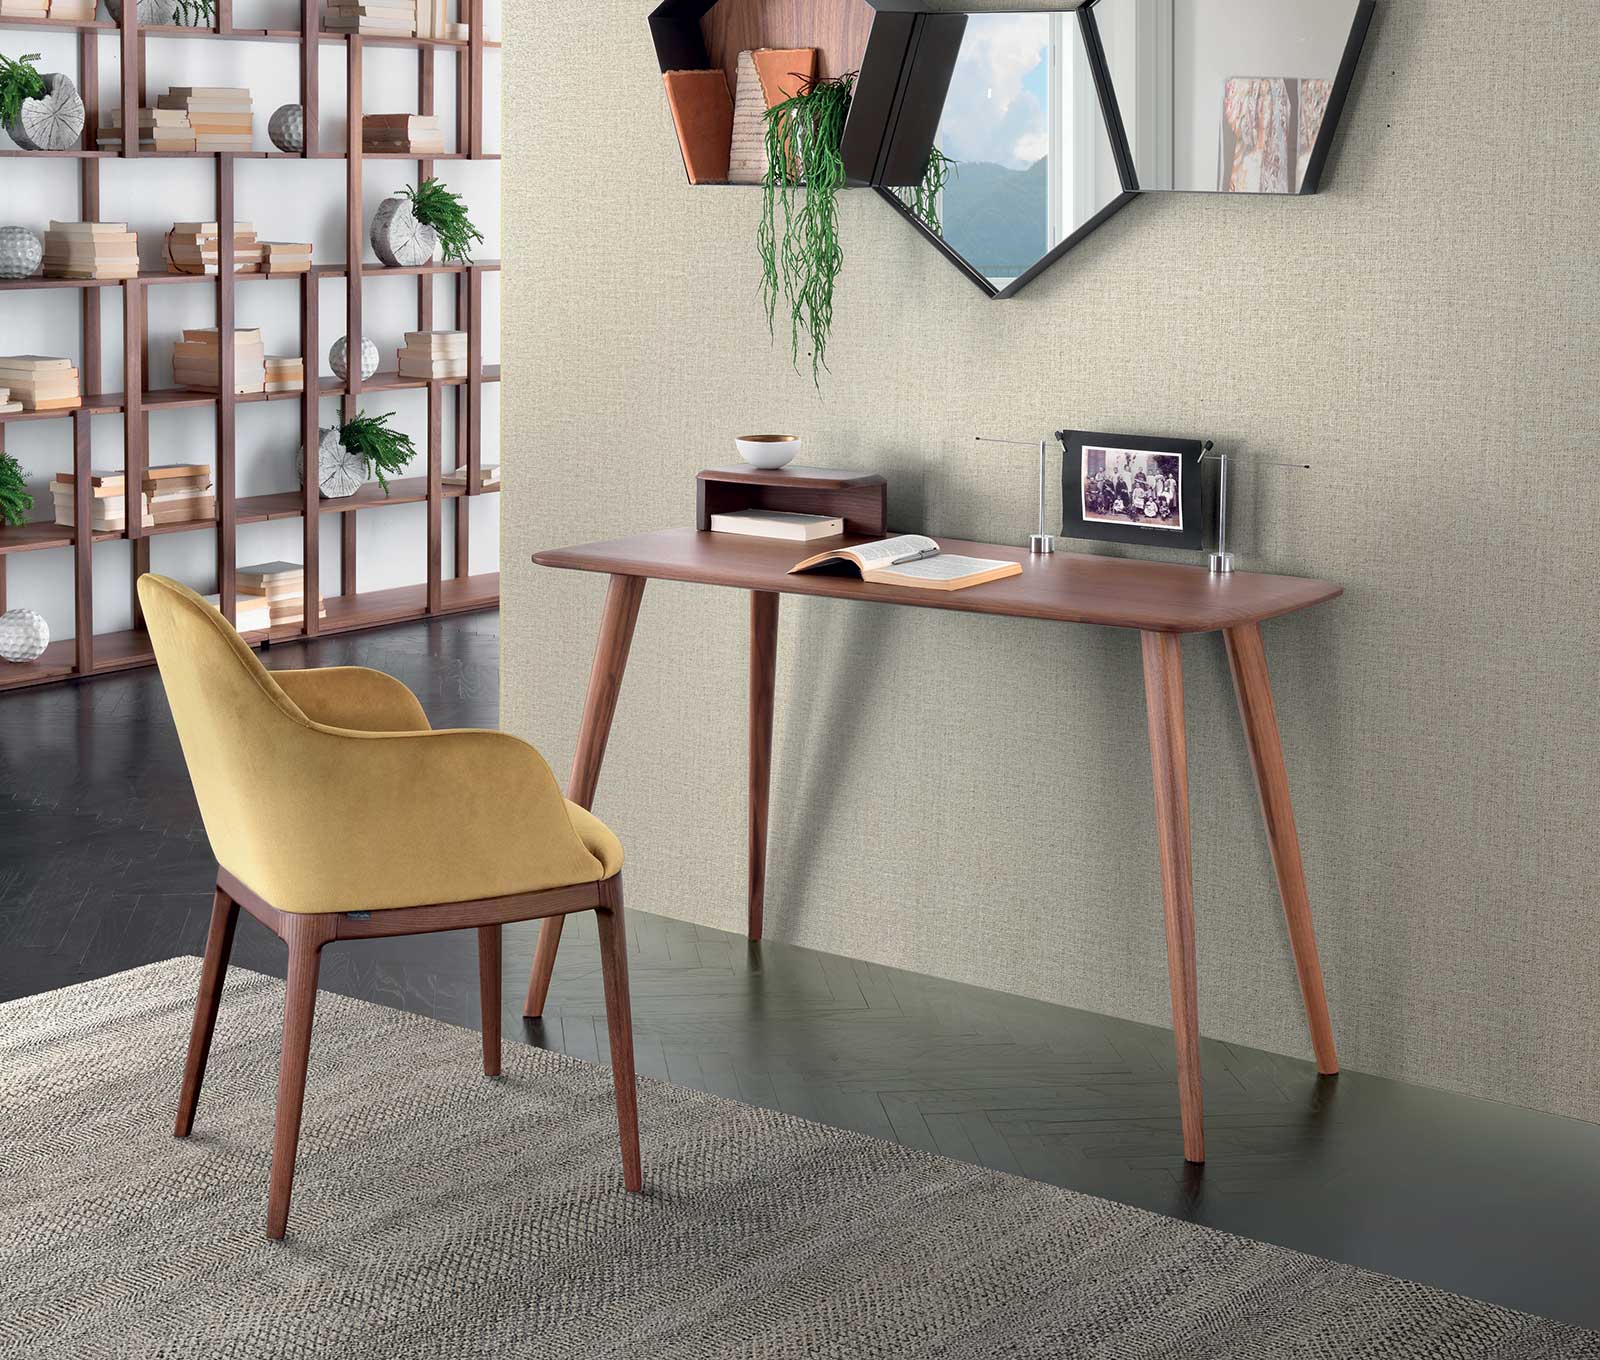 console-Atlante-in-legno-console-minimalista-design writing desk